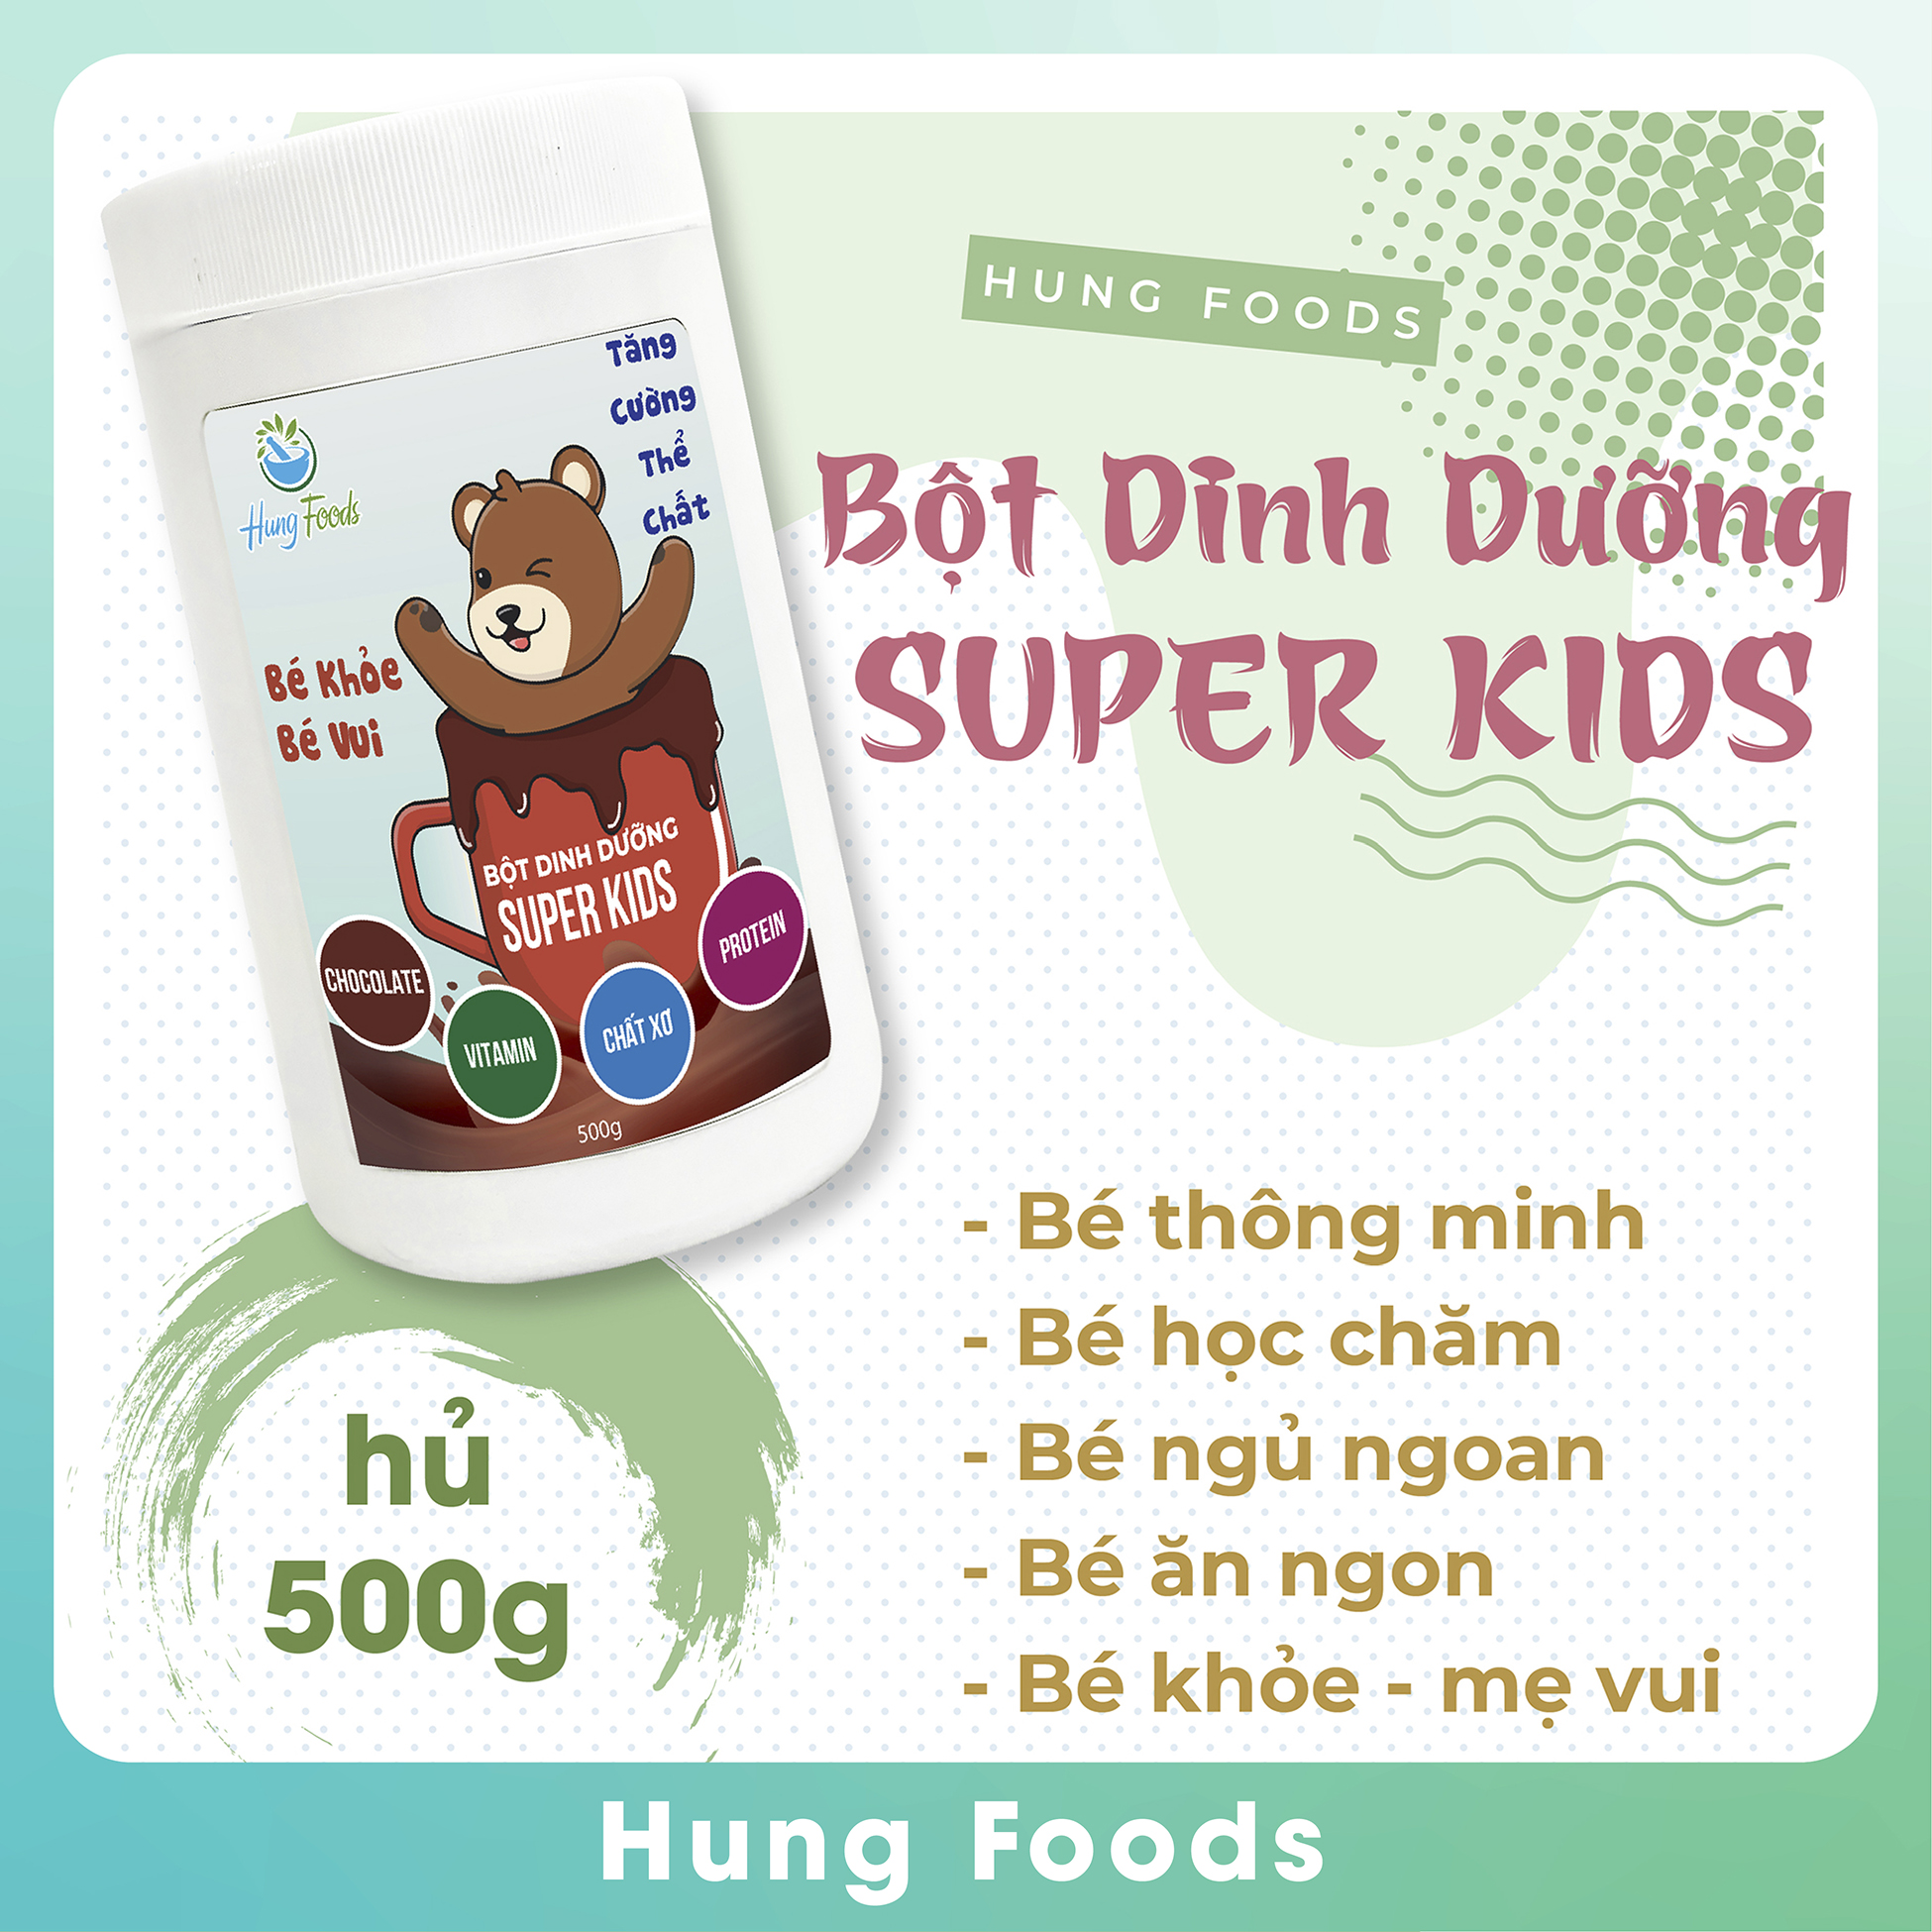 Bột Sữa Hạt Dinh Dưỡng Super Kids - Hộp 500g - Hung Foods